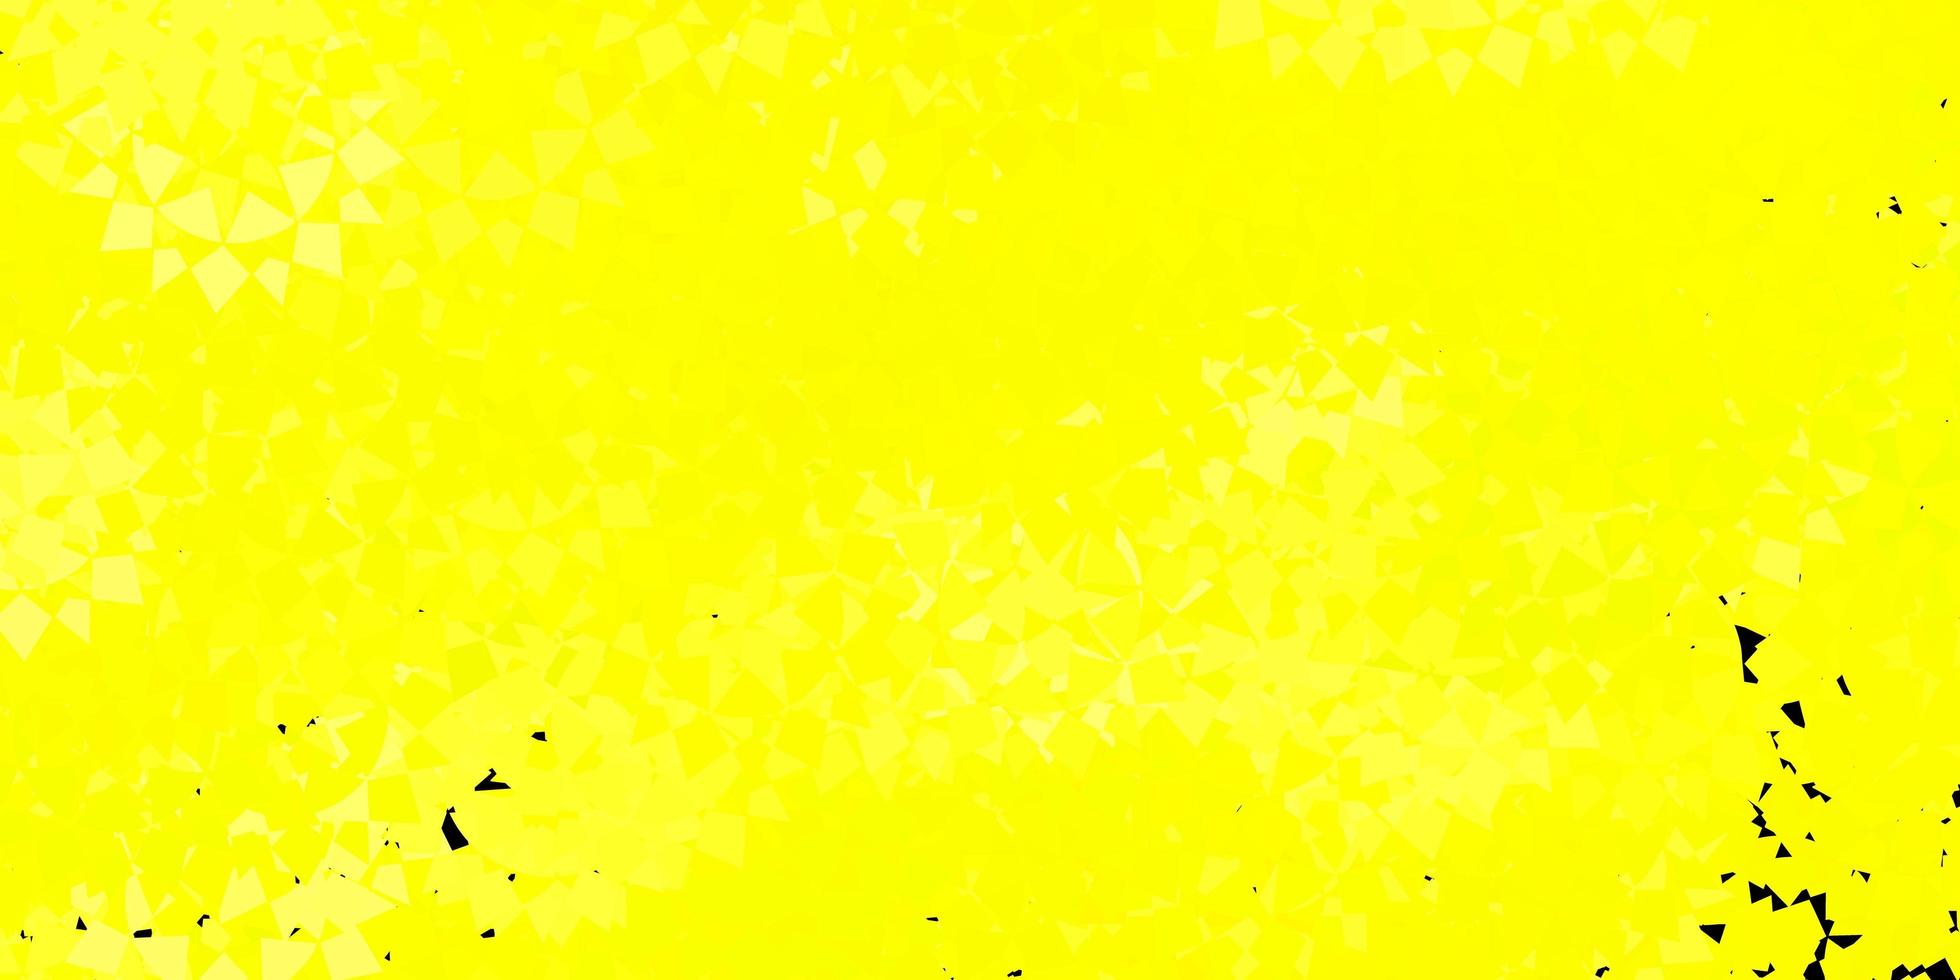 trama vettoriale giallo chiaro con triangoli casuali.